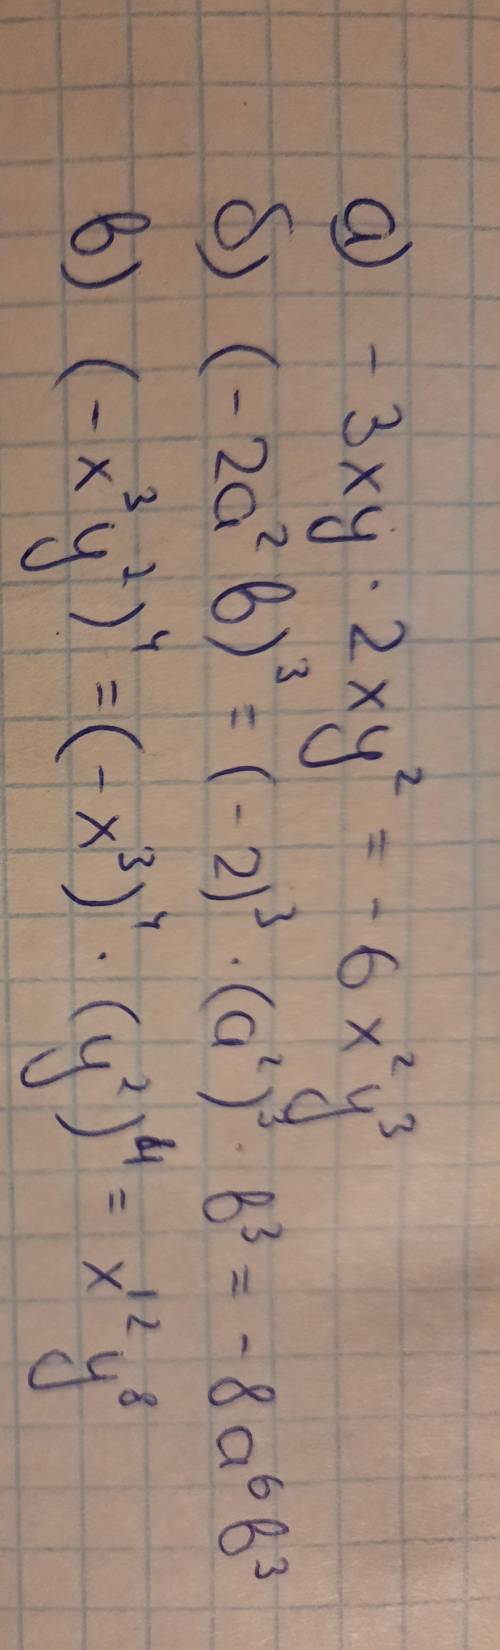 Упростите выражение: а) -3xy * 2xy²; б) (-2a²b)³ в) (-x³у²)⁴​